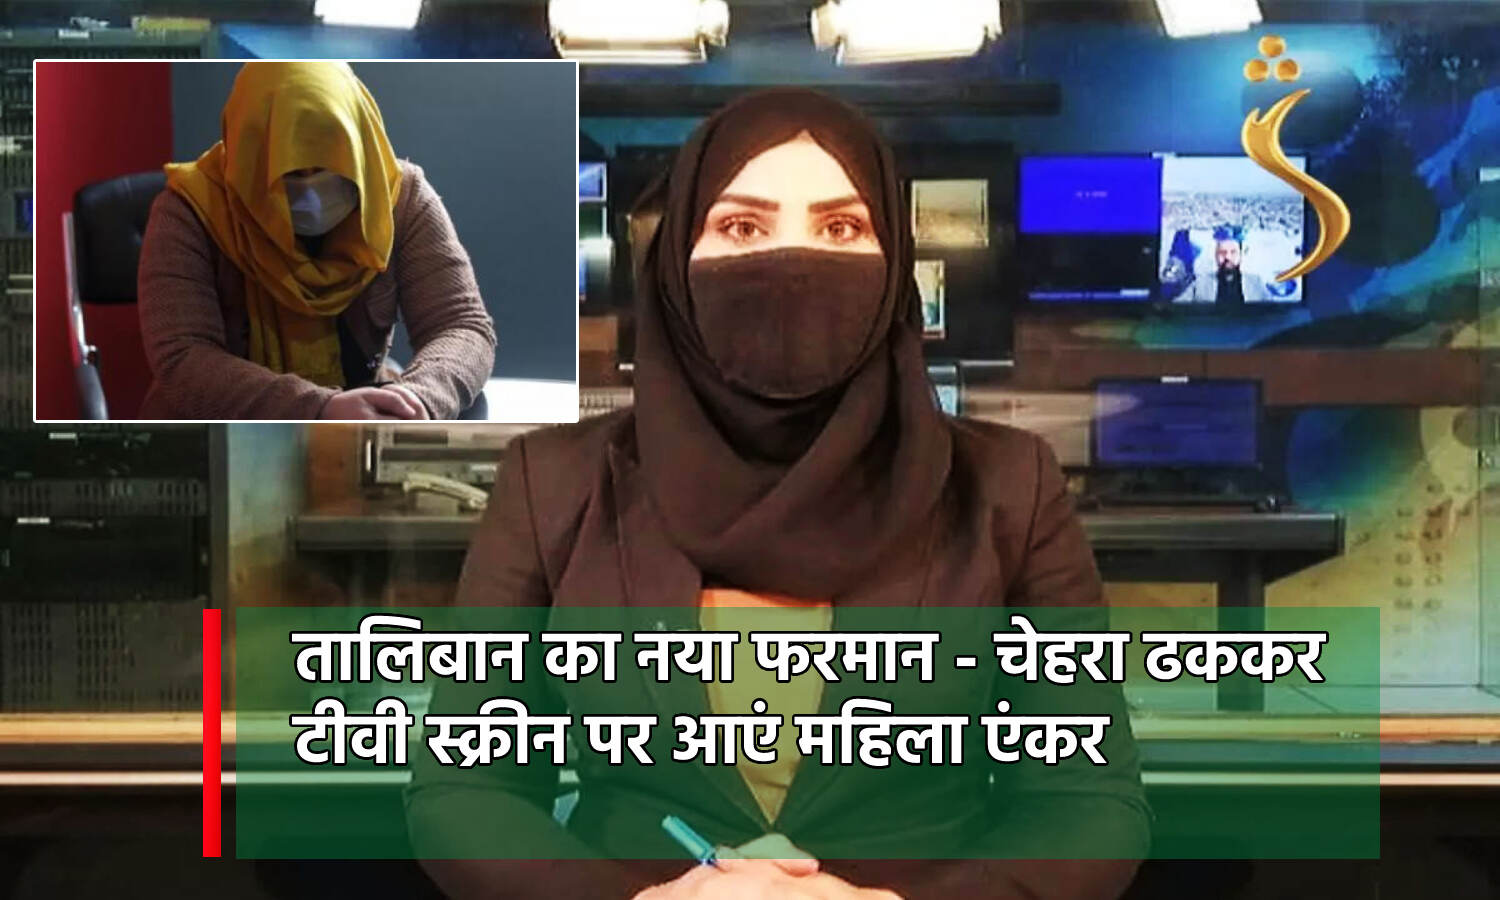 Taliban News : मुंह ढककर कैसे पढ़ूंगी खबर.., तालिबान का नया फरमान- महिला टीवी एंकर को चेहरा ढंकना अनिवार्य